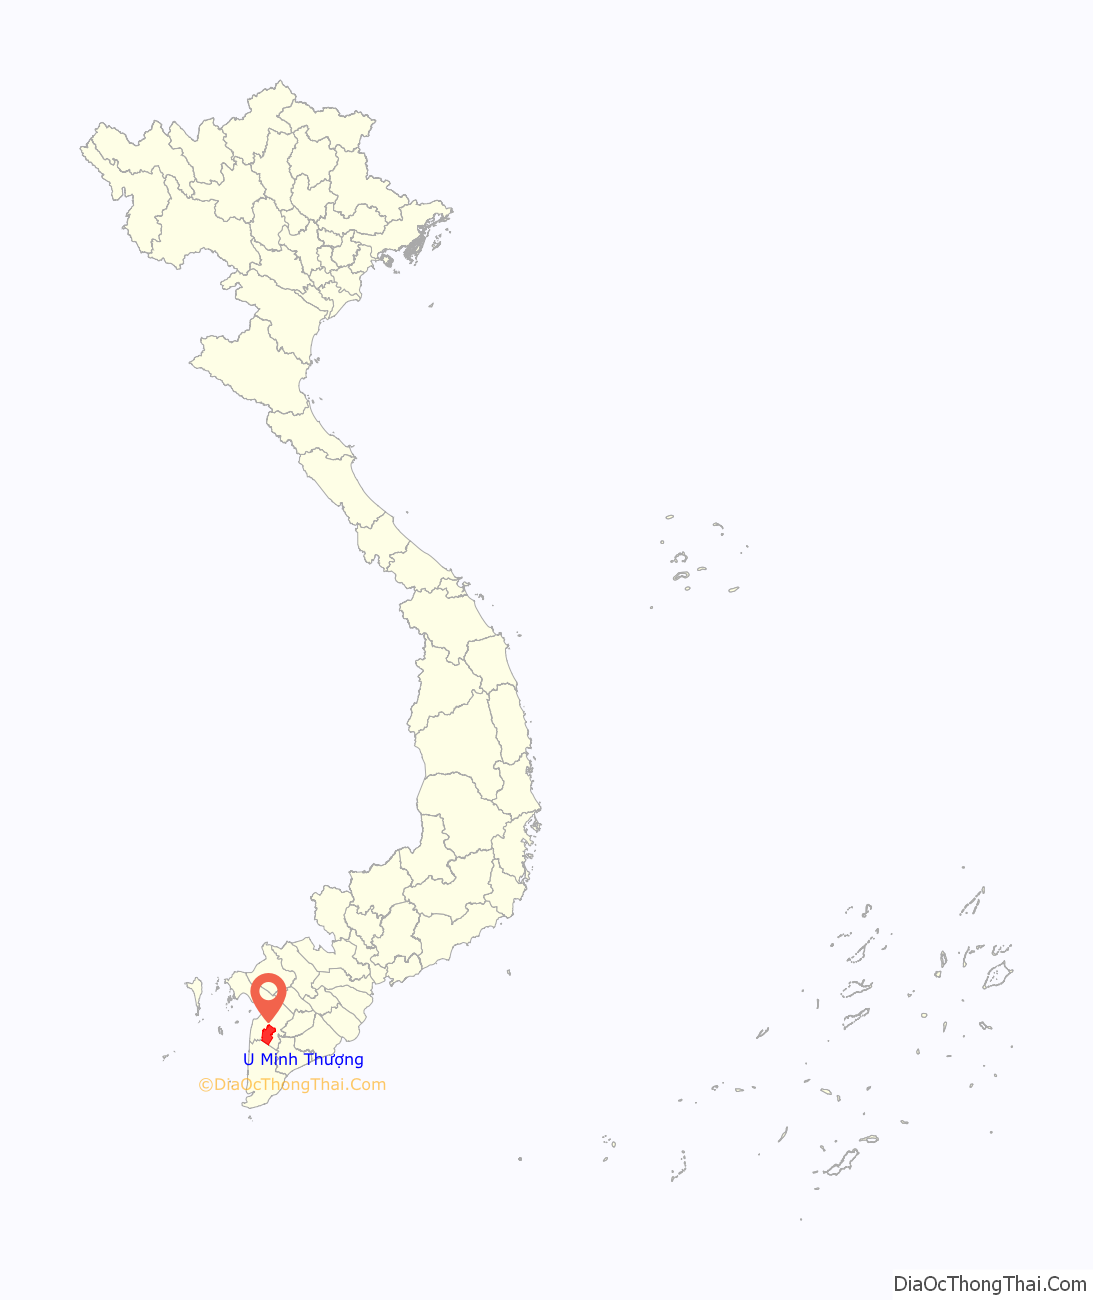 Huyện U Minh Thượng ở đâu? Vị trí của huyện U Minh Thượng